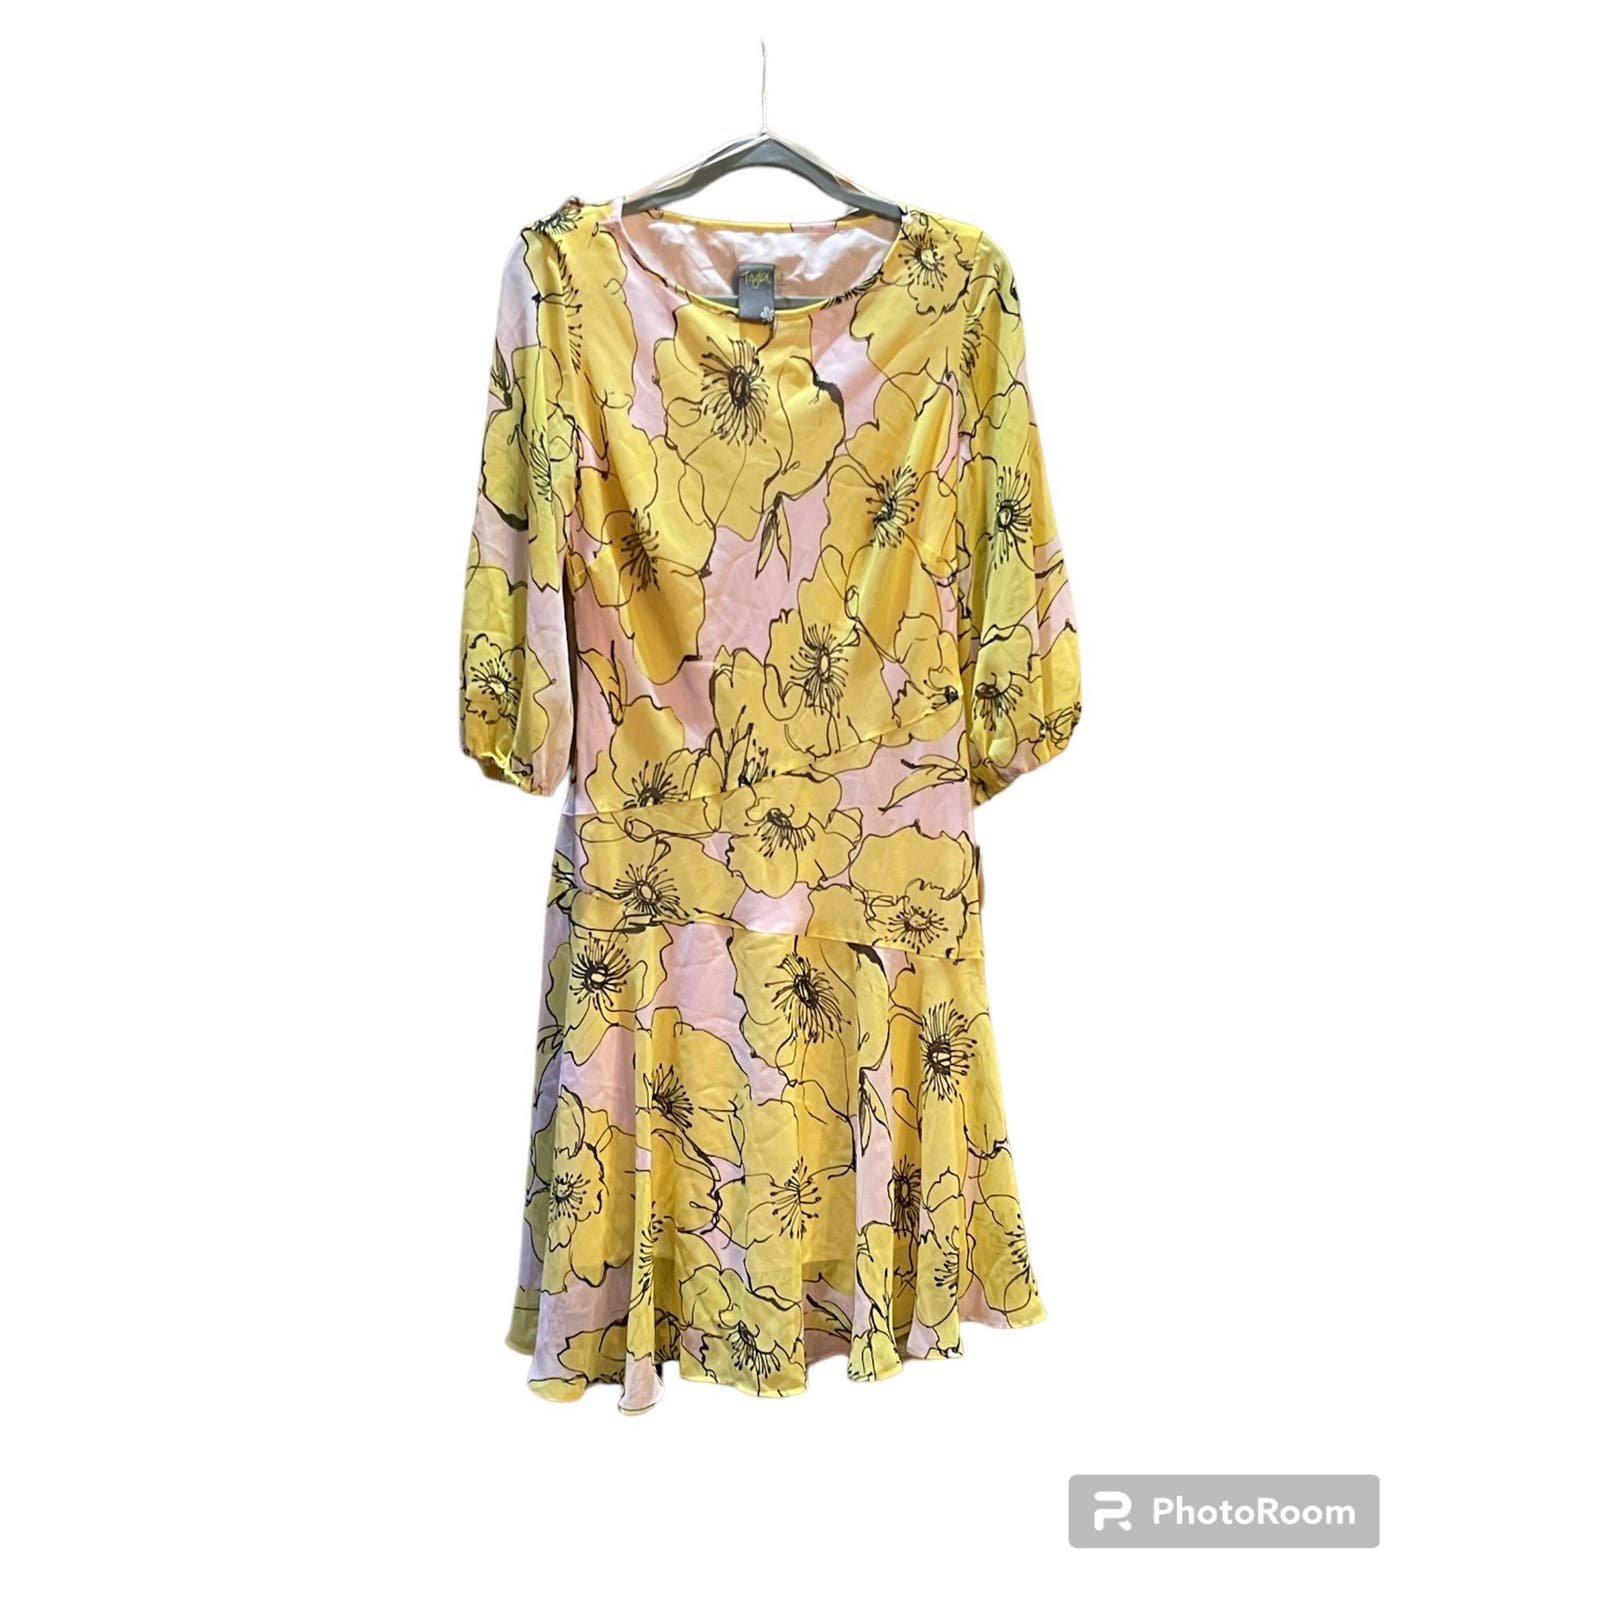 NWT Taylor Ruffle Hem Floral Chiffon Dress Size 8 GHWm9G5rX